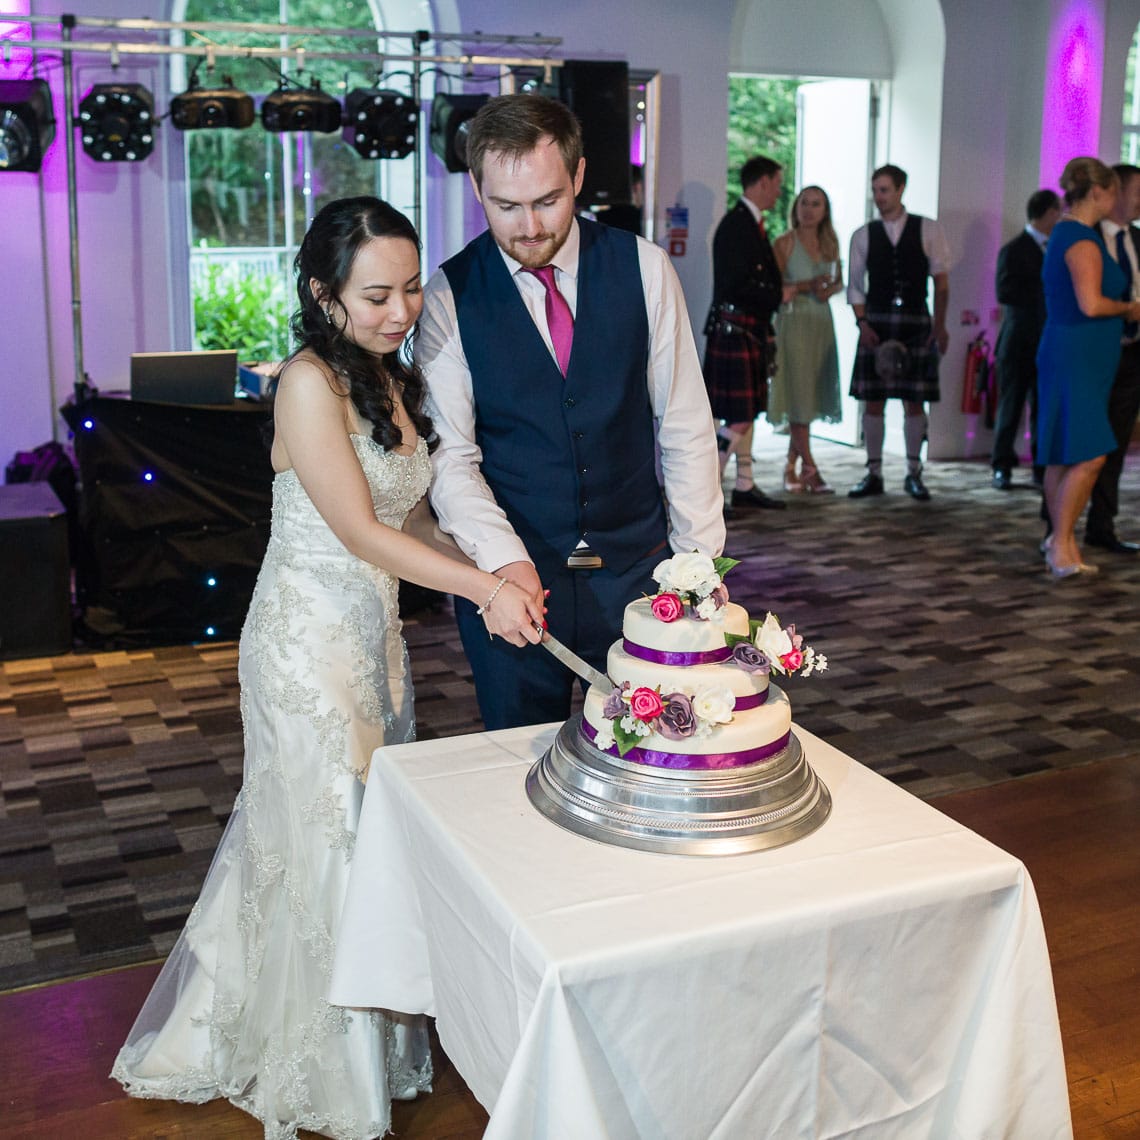 Eskmills Venue Wedding newlyweds cutting wedding cake